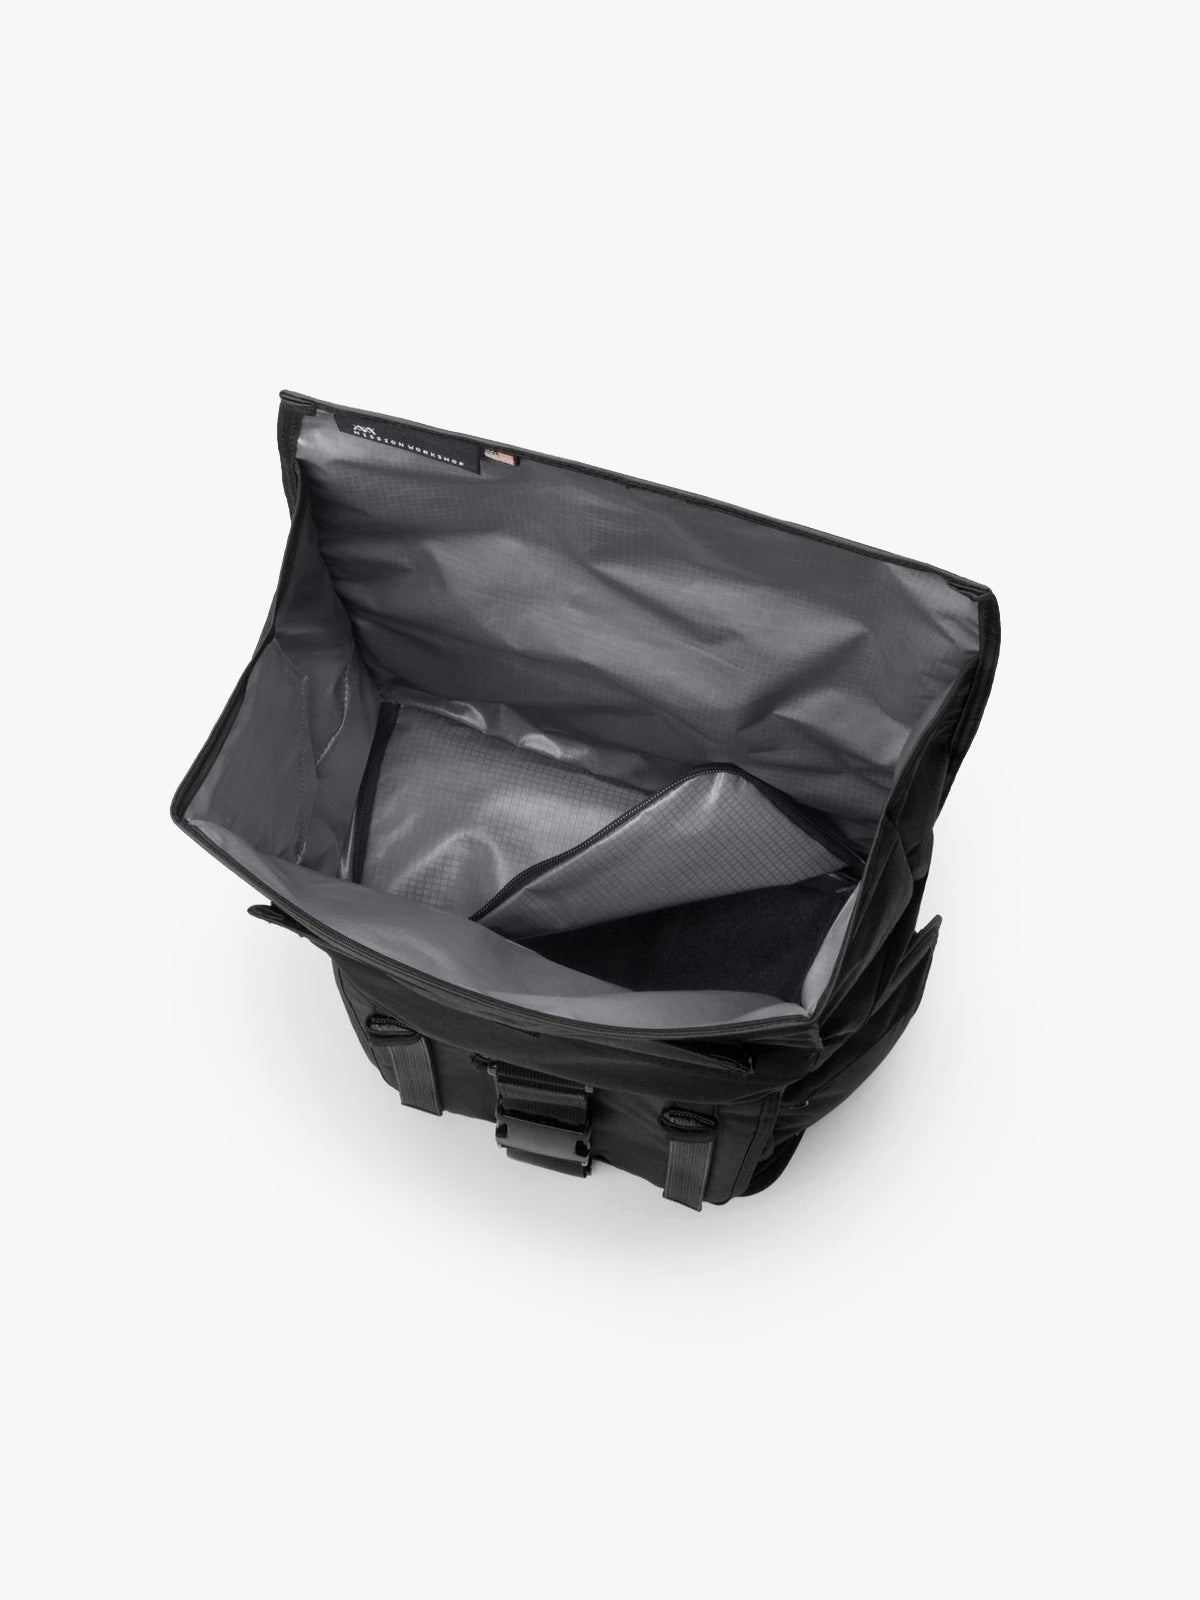 Integer by Mission Workshop - Weatherproof Bags & Technical Apparel - San Francisco & Los Angeles - Construit pour durer - Garanti pour toujours